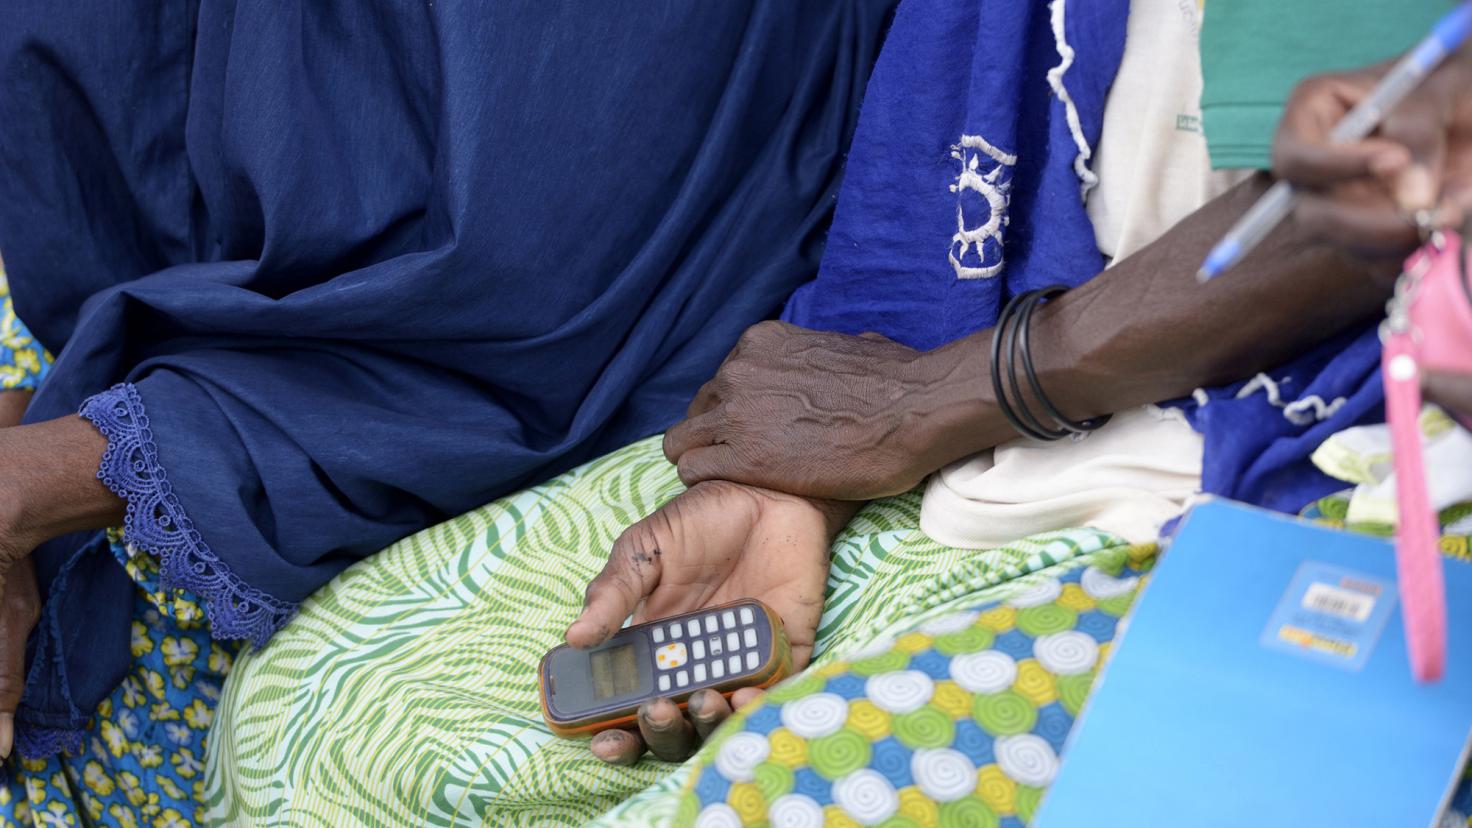 Burkina Faso, žena držící mobilní telefon